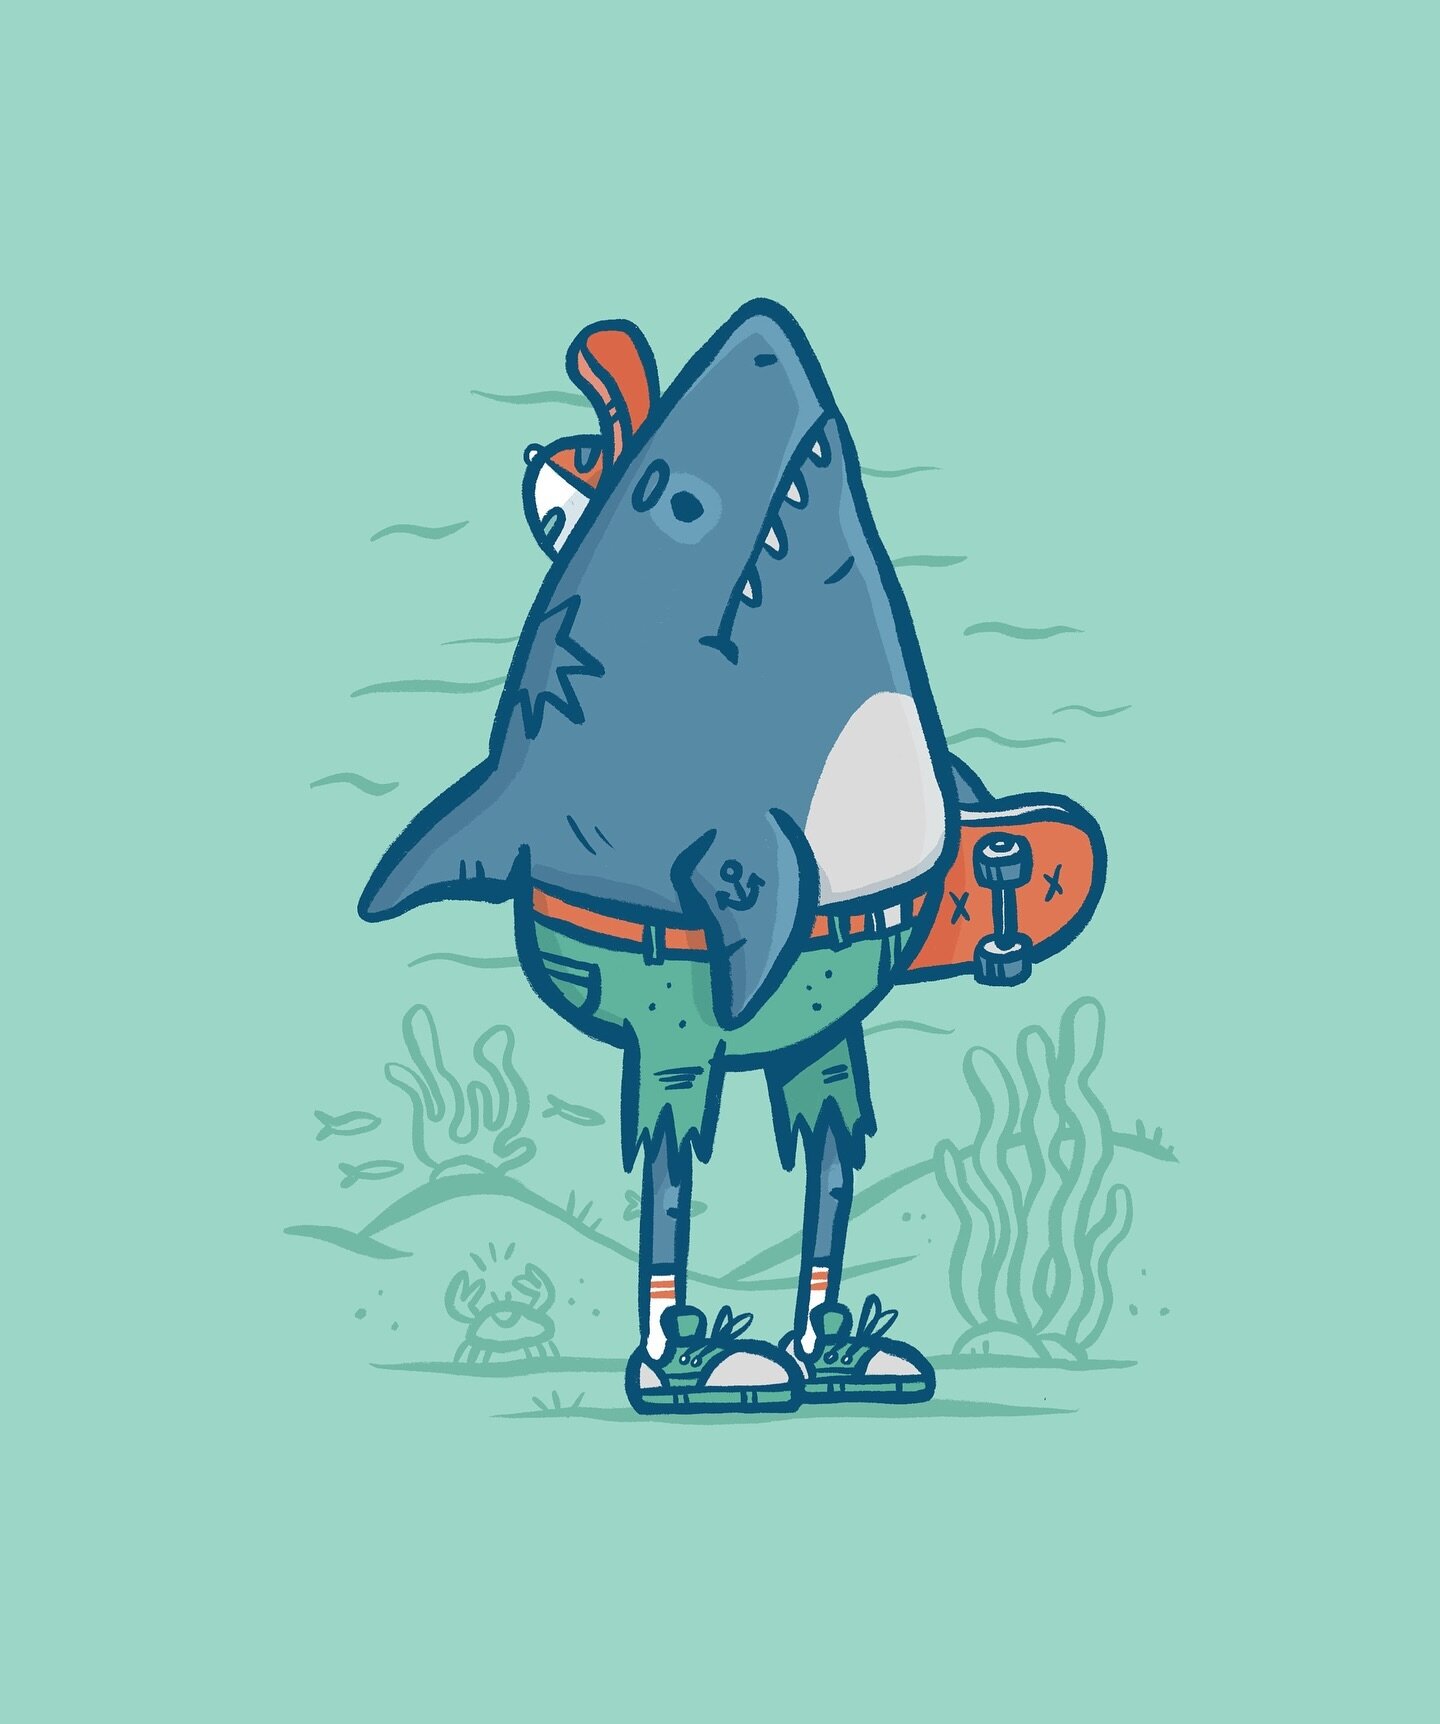 Just a little Shark Dude. 

#sharkillustration #sharkwithlegs #skatershark #digitalillustration #characterillustration #underthesea